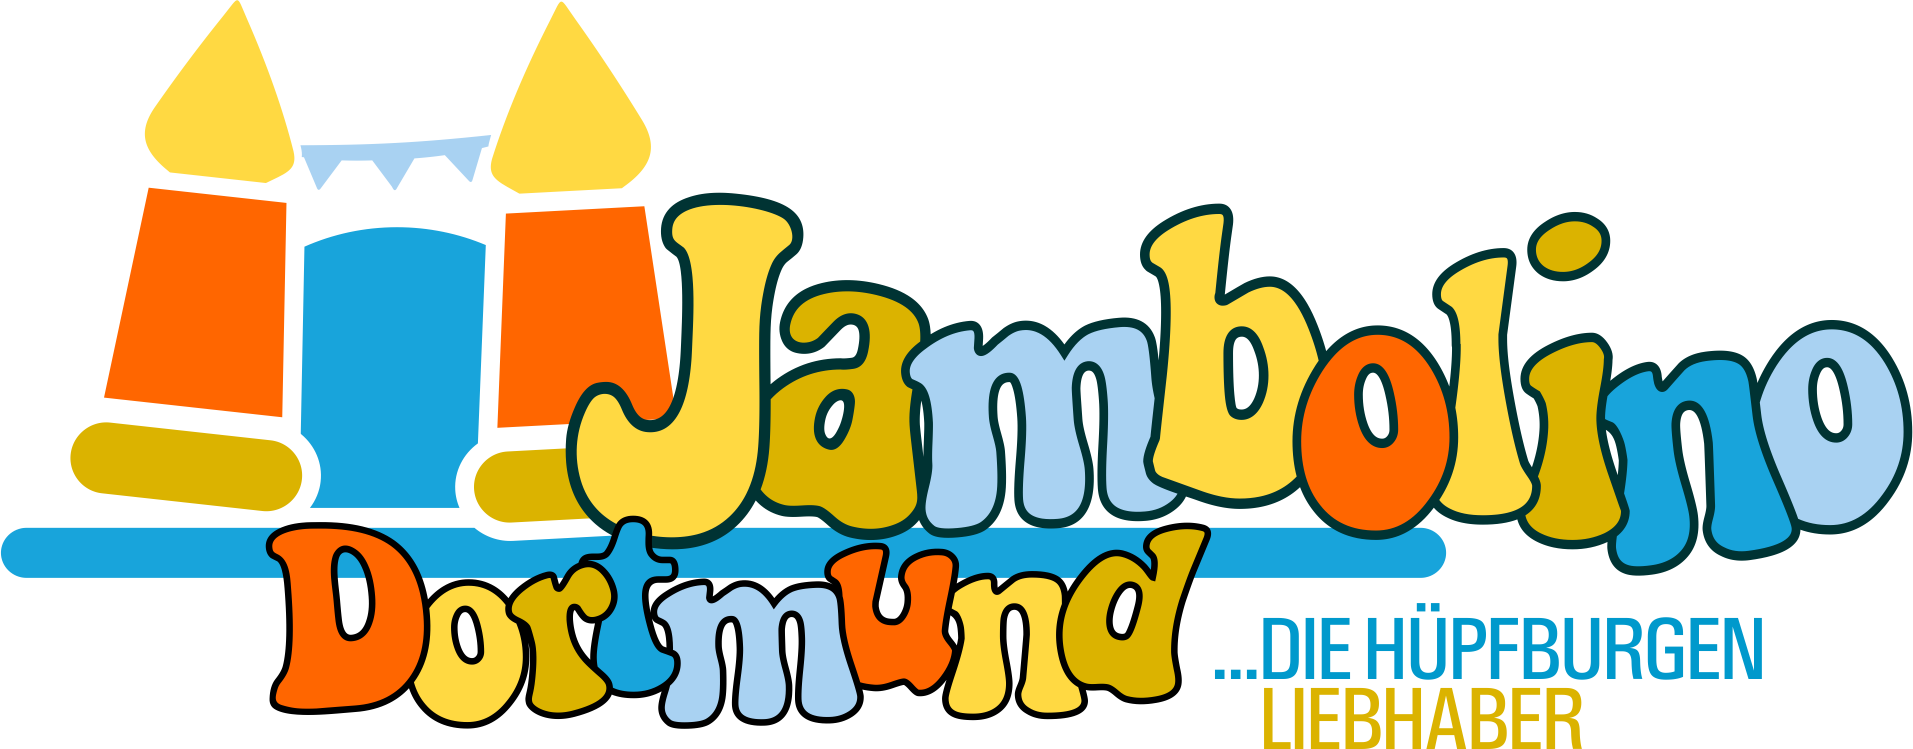 Jambolino Dortmund